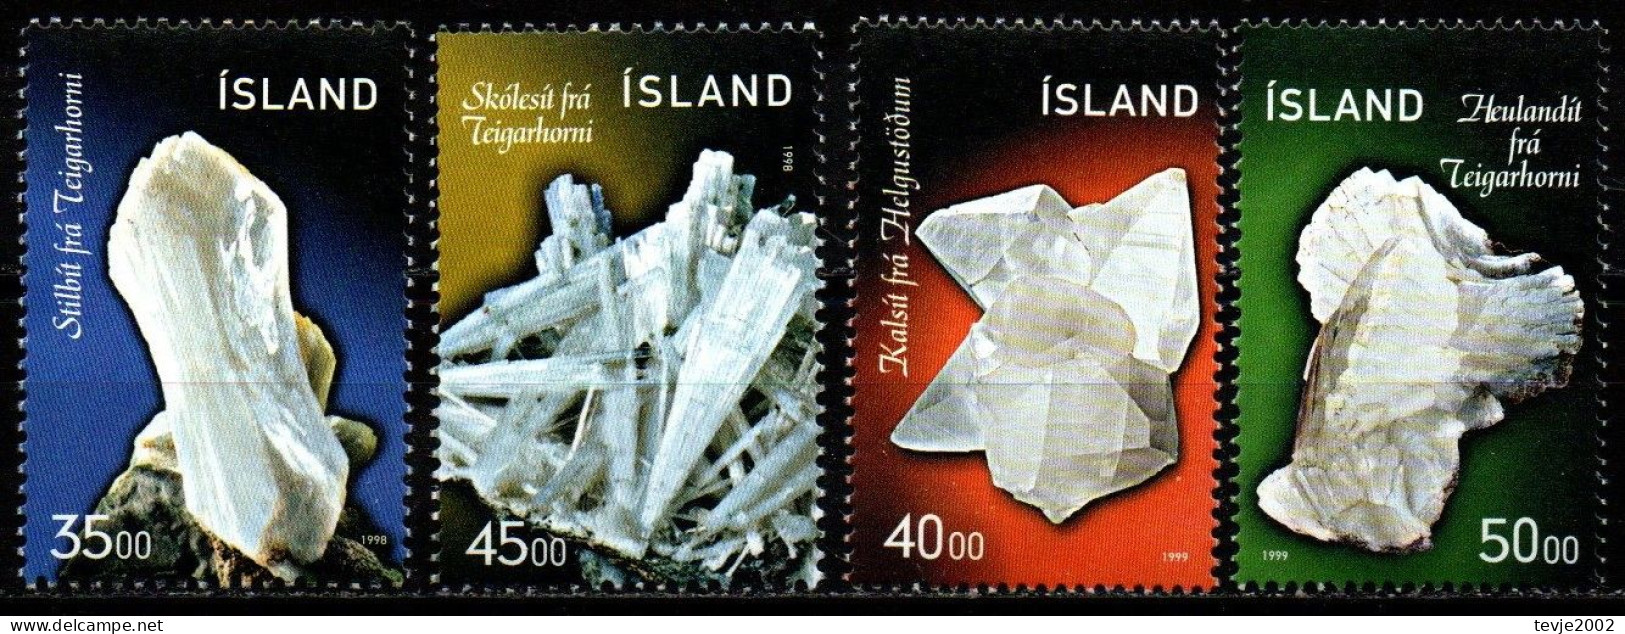 Island 1998/99 - Mi.Nr. 893/894 + 917/918 - Postfrisch MNH - Mineralien Minerals - Mineralien